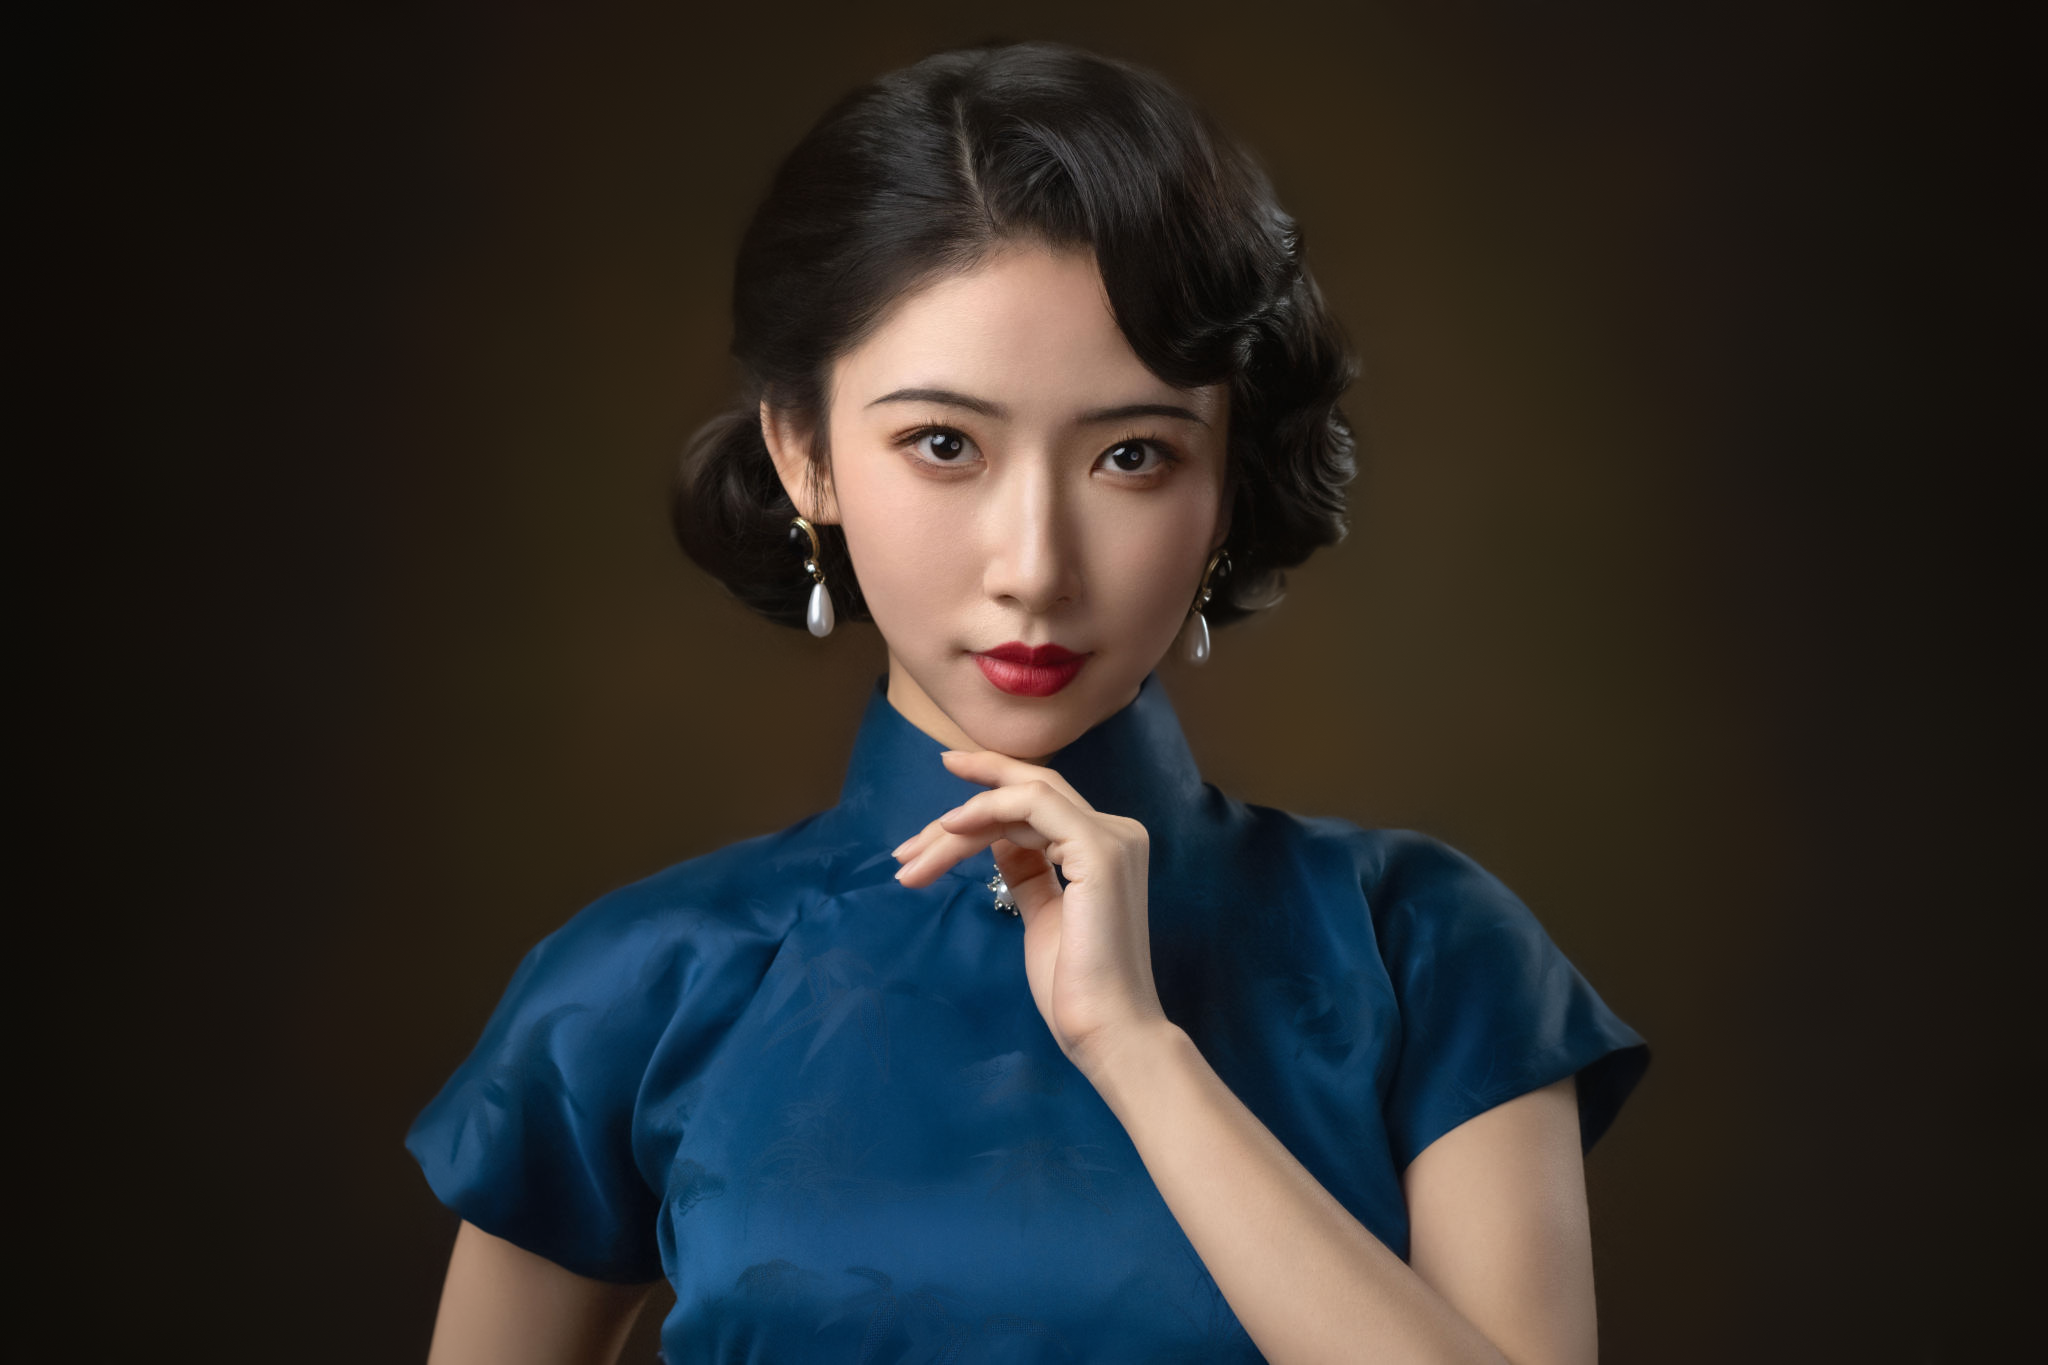 Lee Hu Women Asian Earring Lipstick Portrait 2048x1365